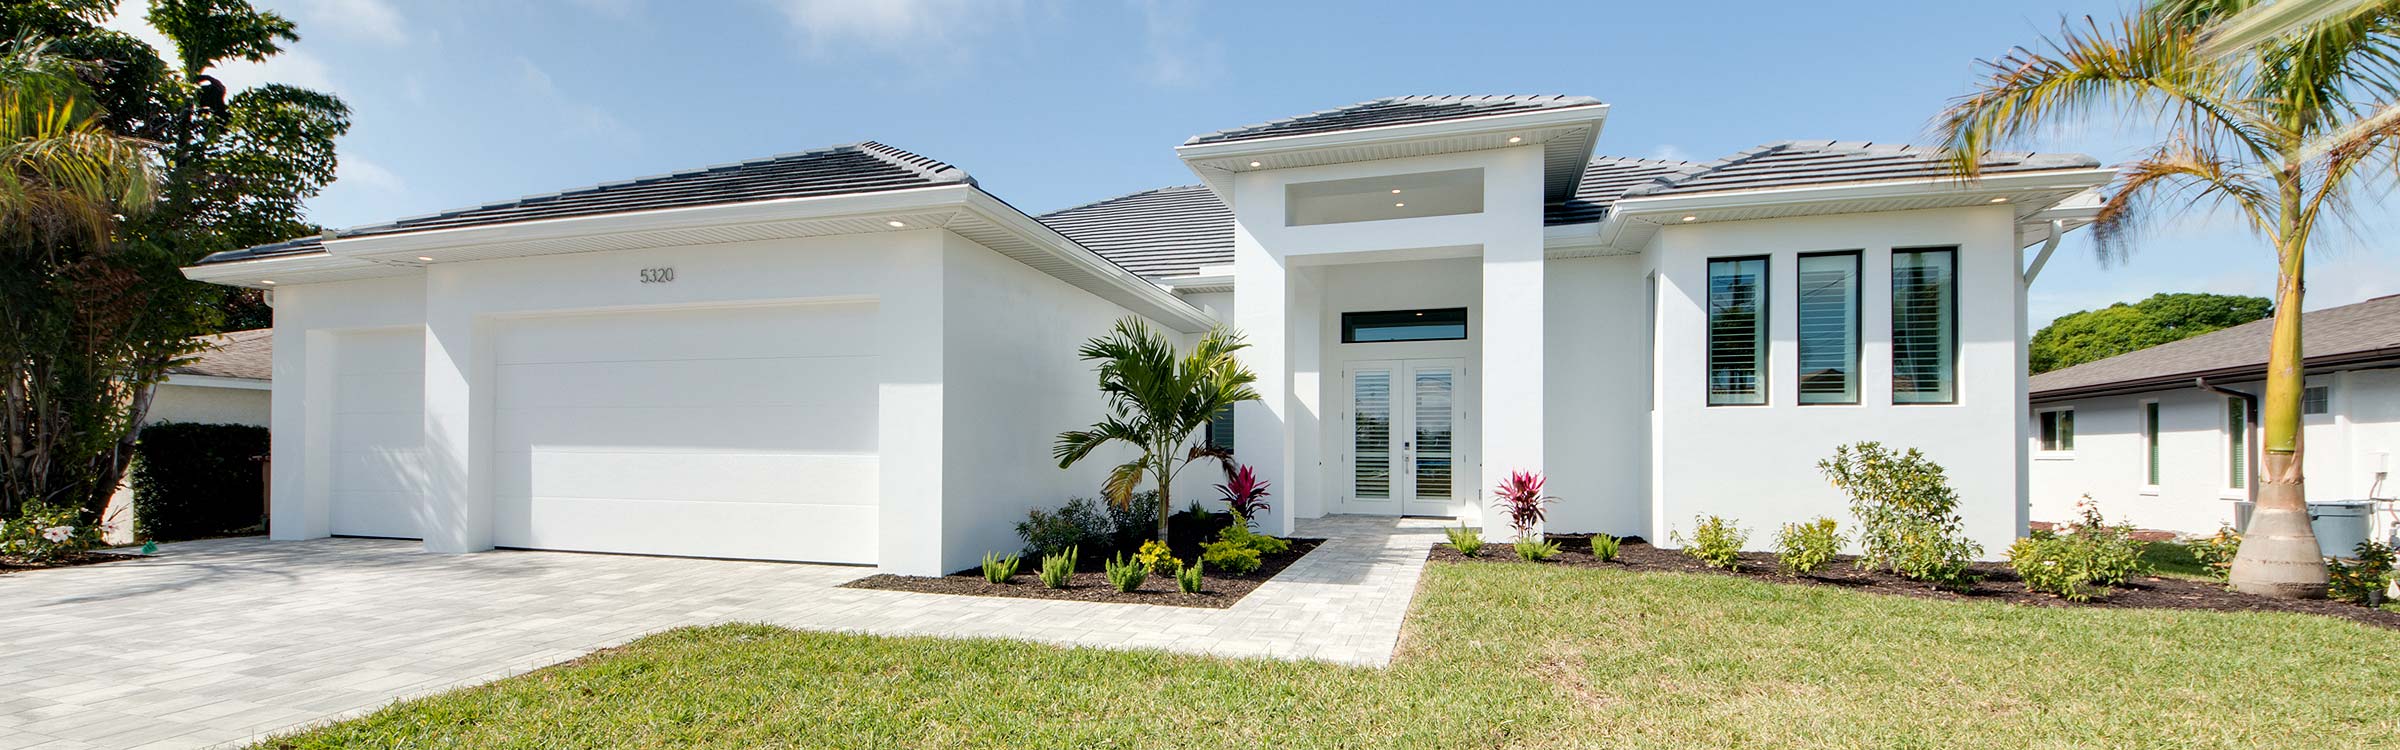 Immobilienkauf in Florida - klare Regelungen